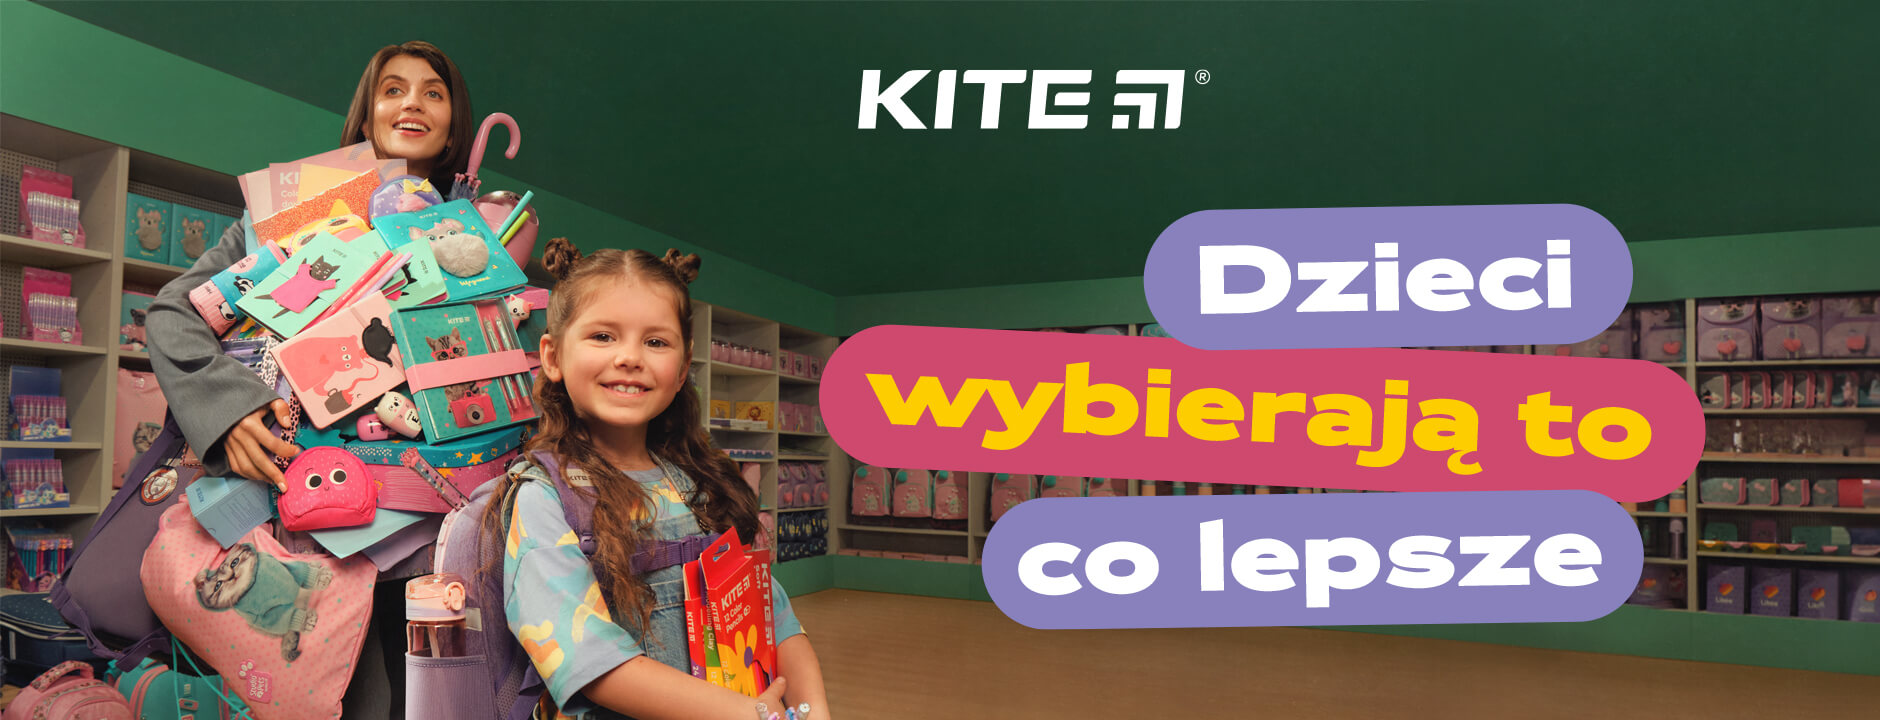 Kite Education